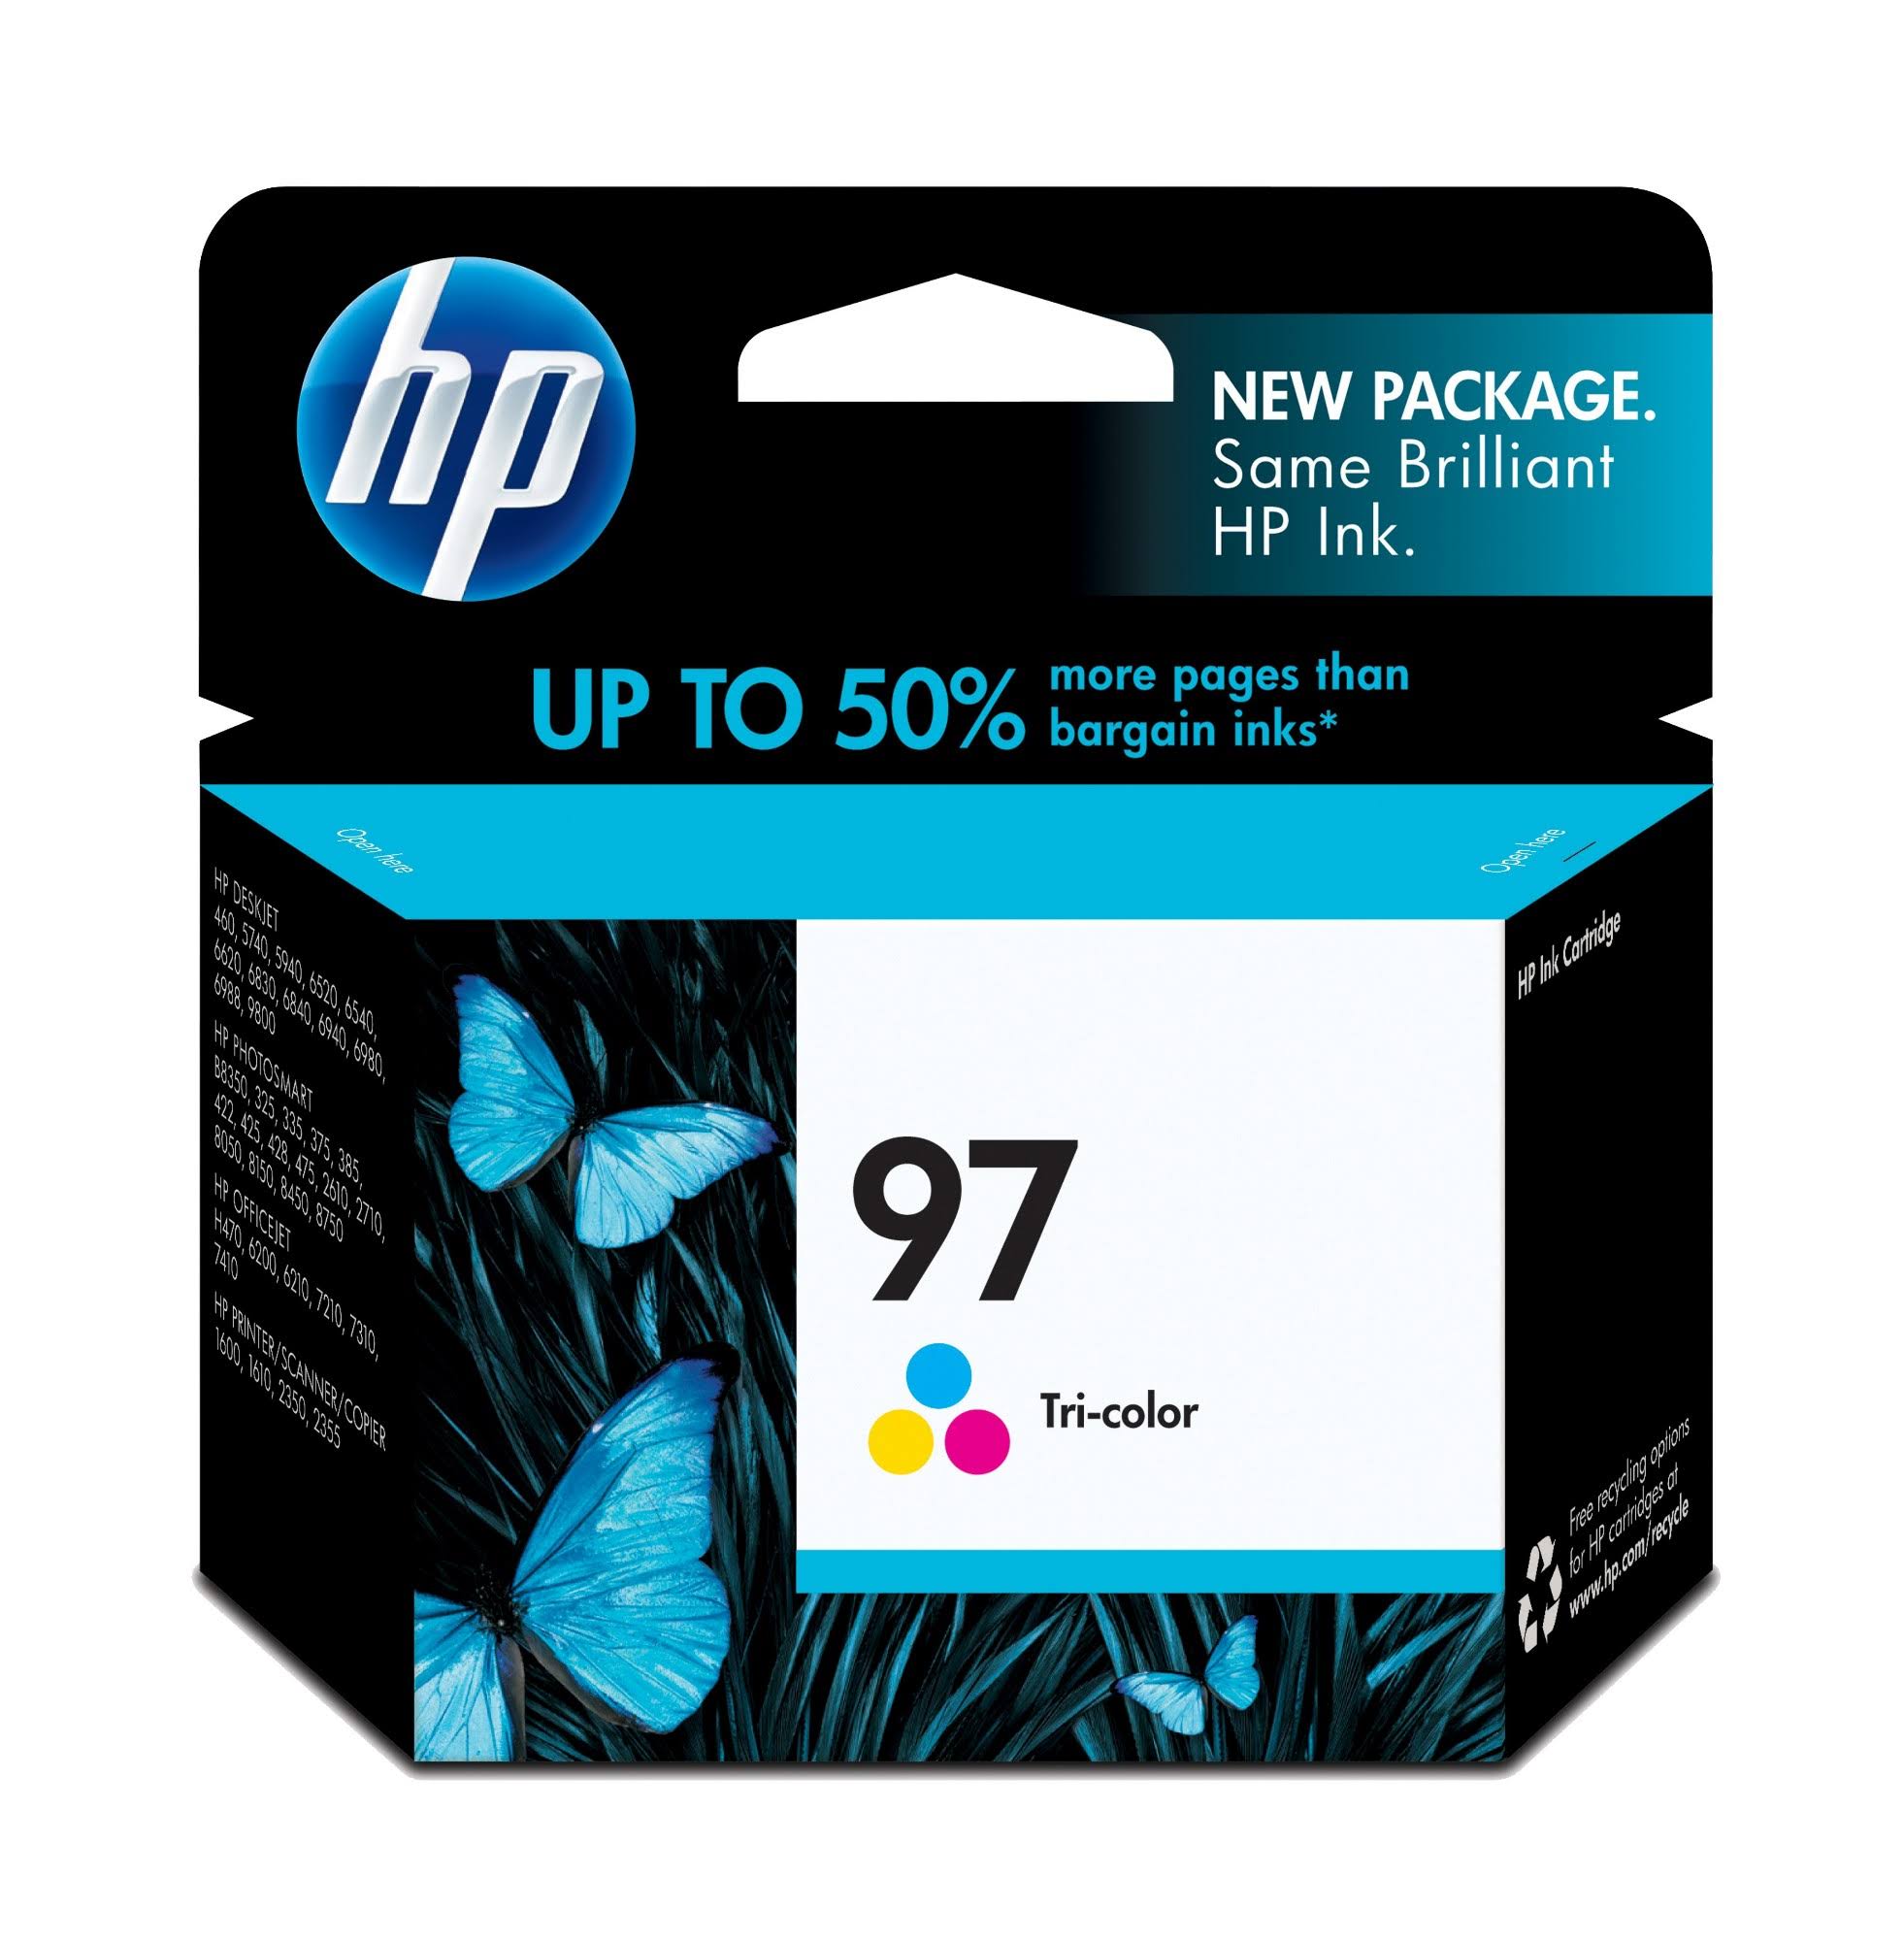 HP Original Ink Cartridge - 97 Tri-color